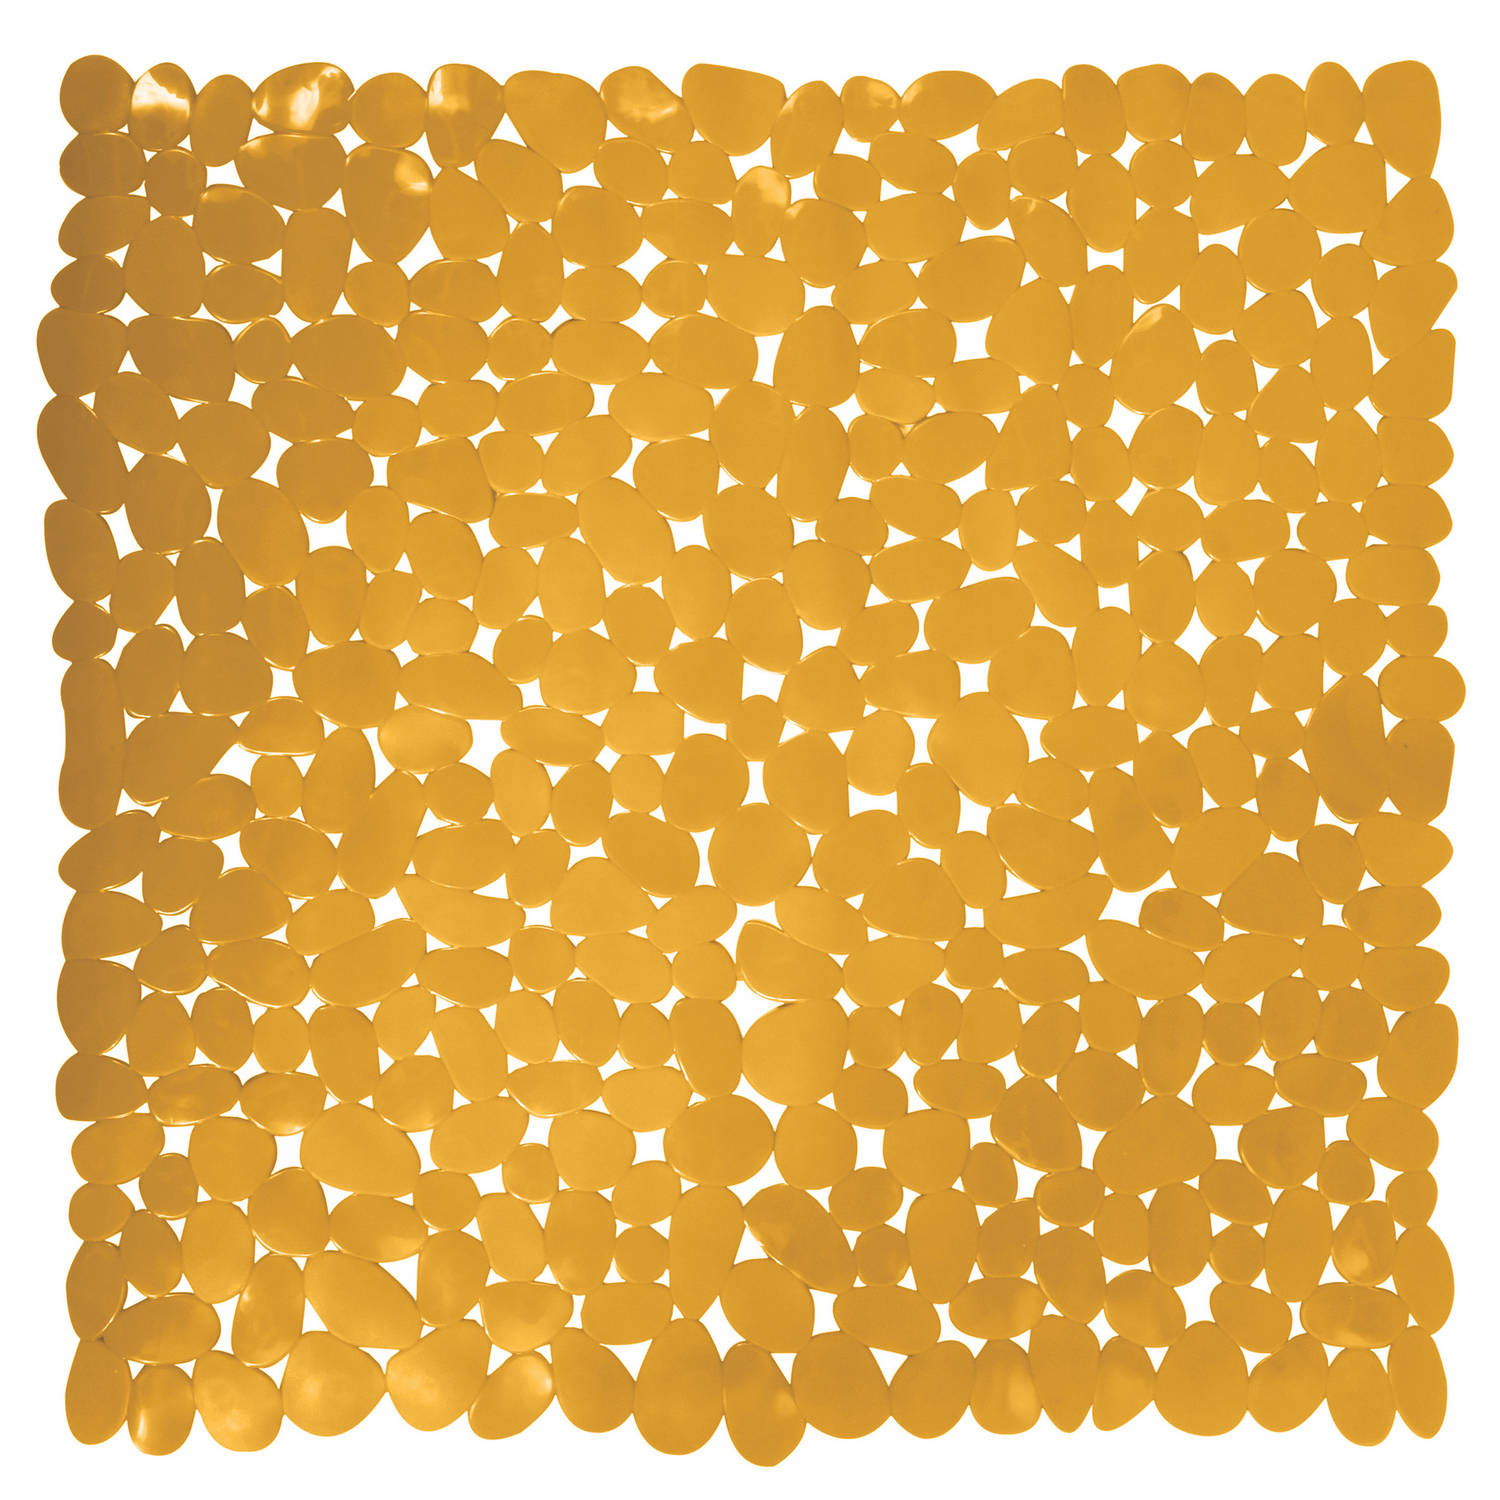 MSV Douche/bad anti-slip mat - badkamer - pvc - saffraan geel - 53 x 53 cm - zuignappen - steentjes motief